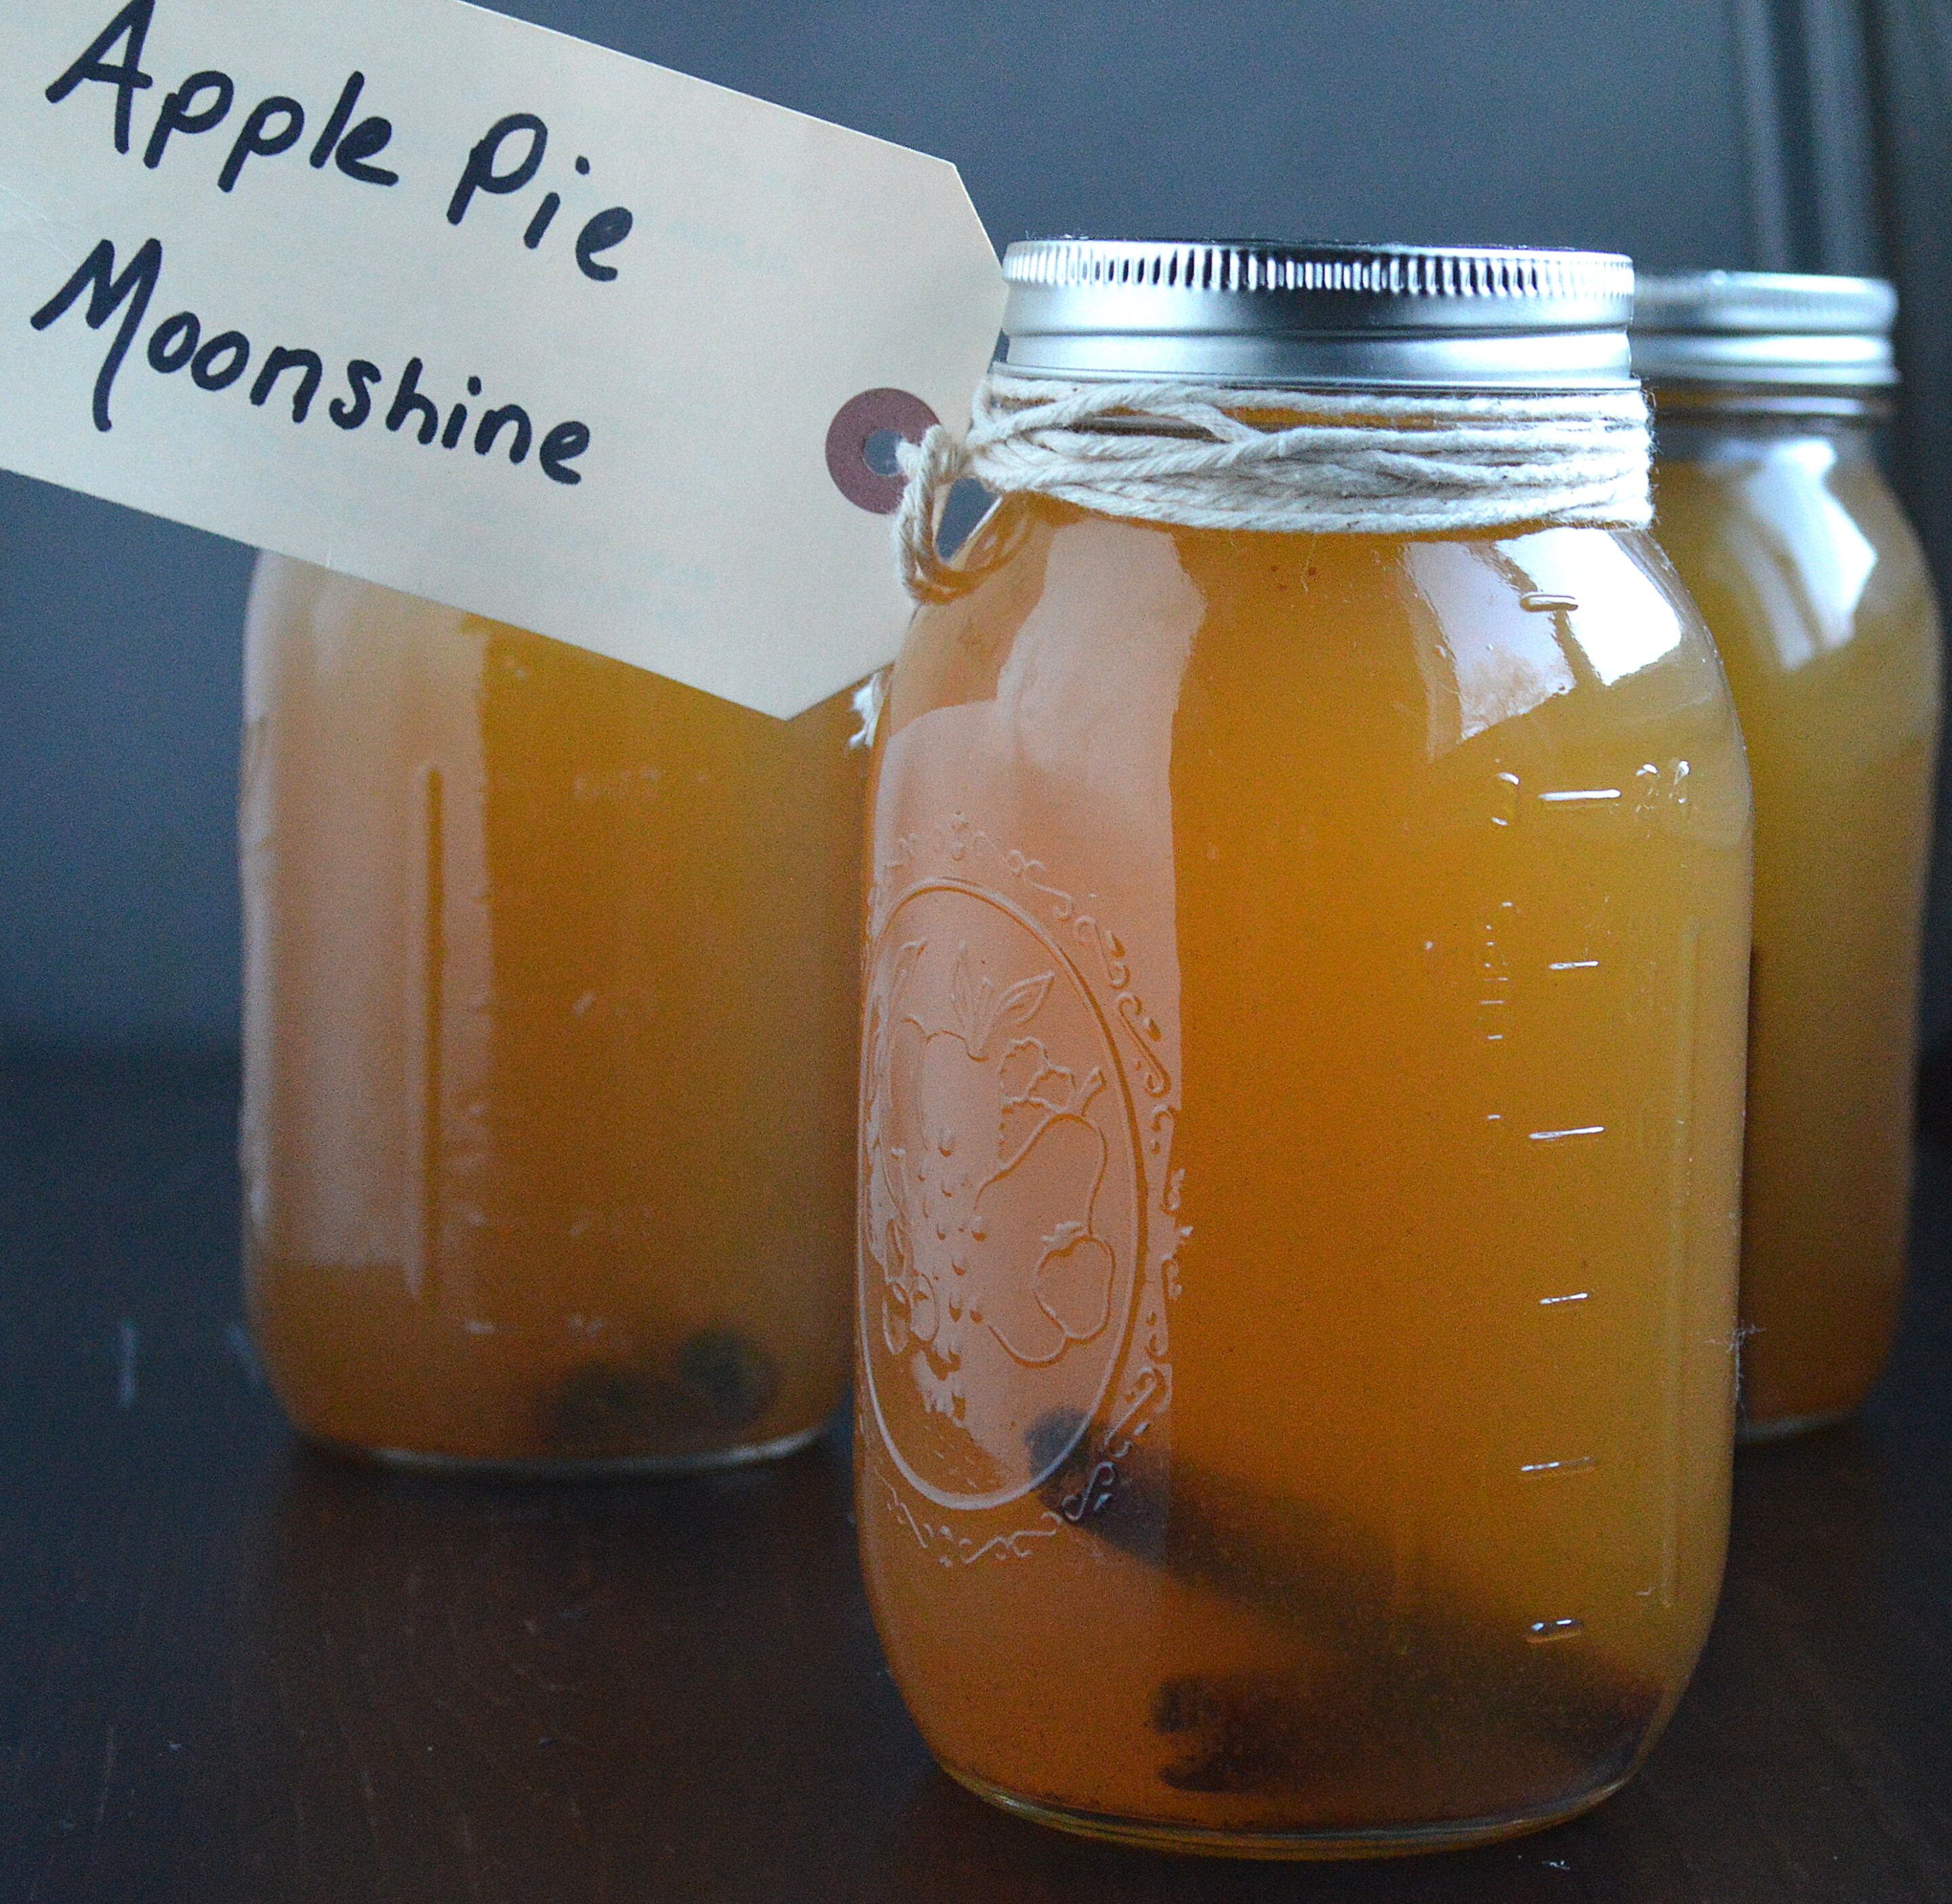 Apple Pie Moonshine